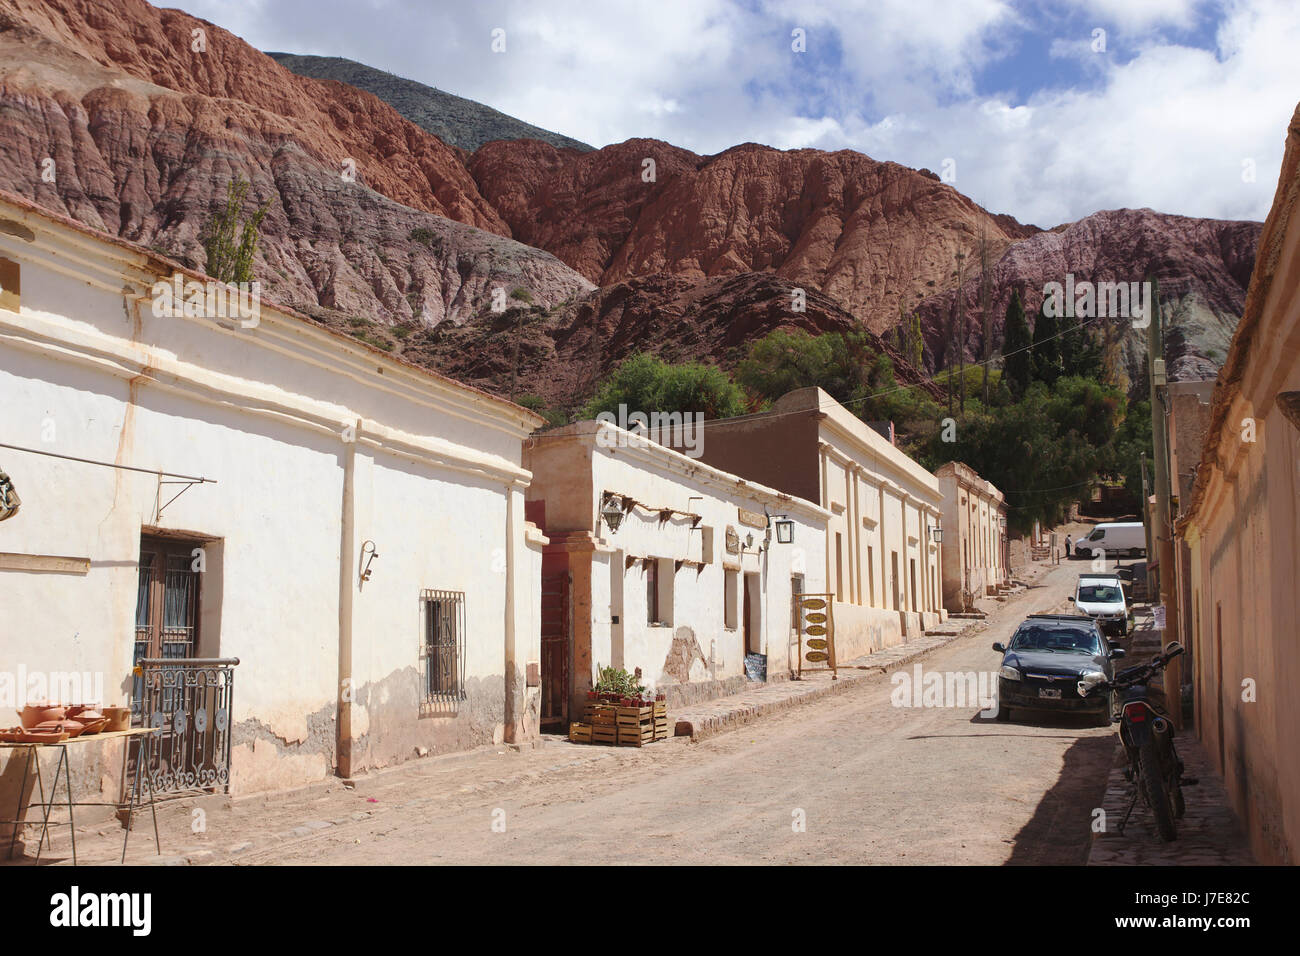 Road in Purmamarca, colonial buildings, Quebrada de Humahuaca, Argentina Stock Photo